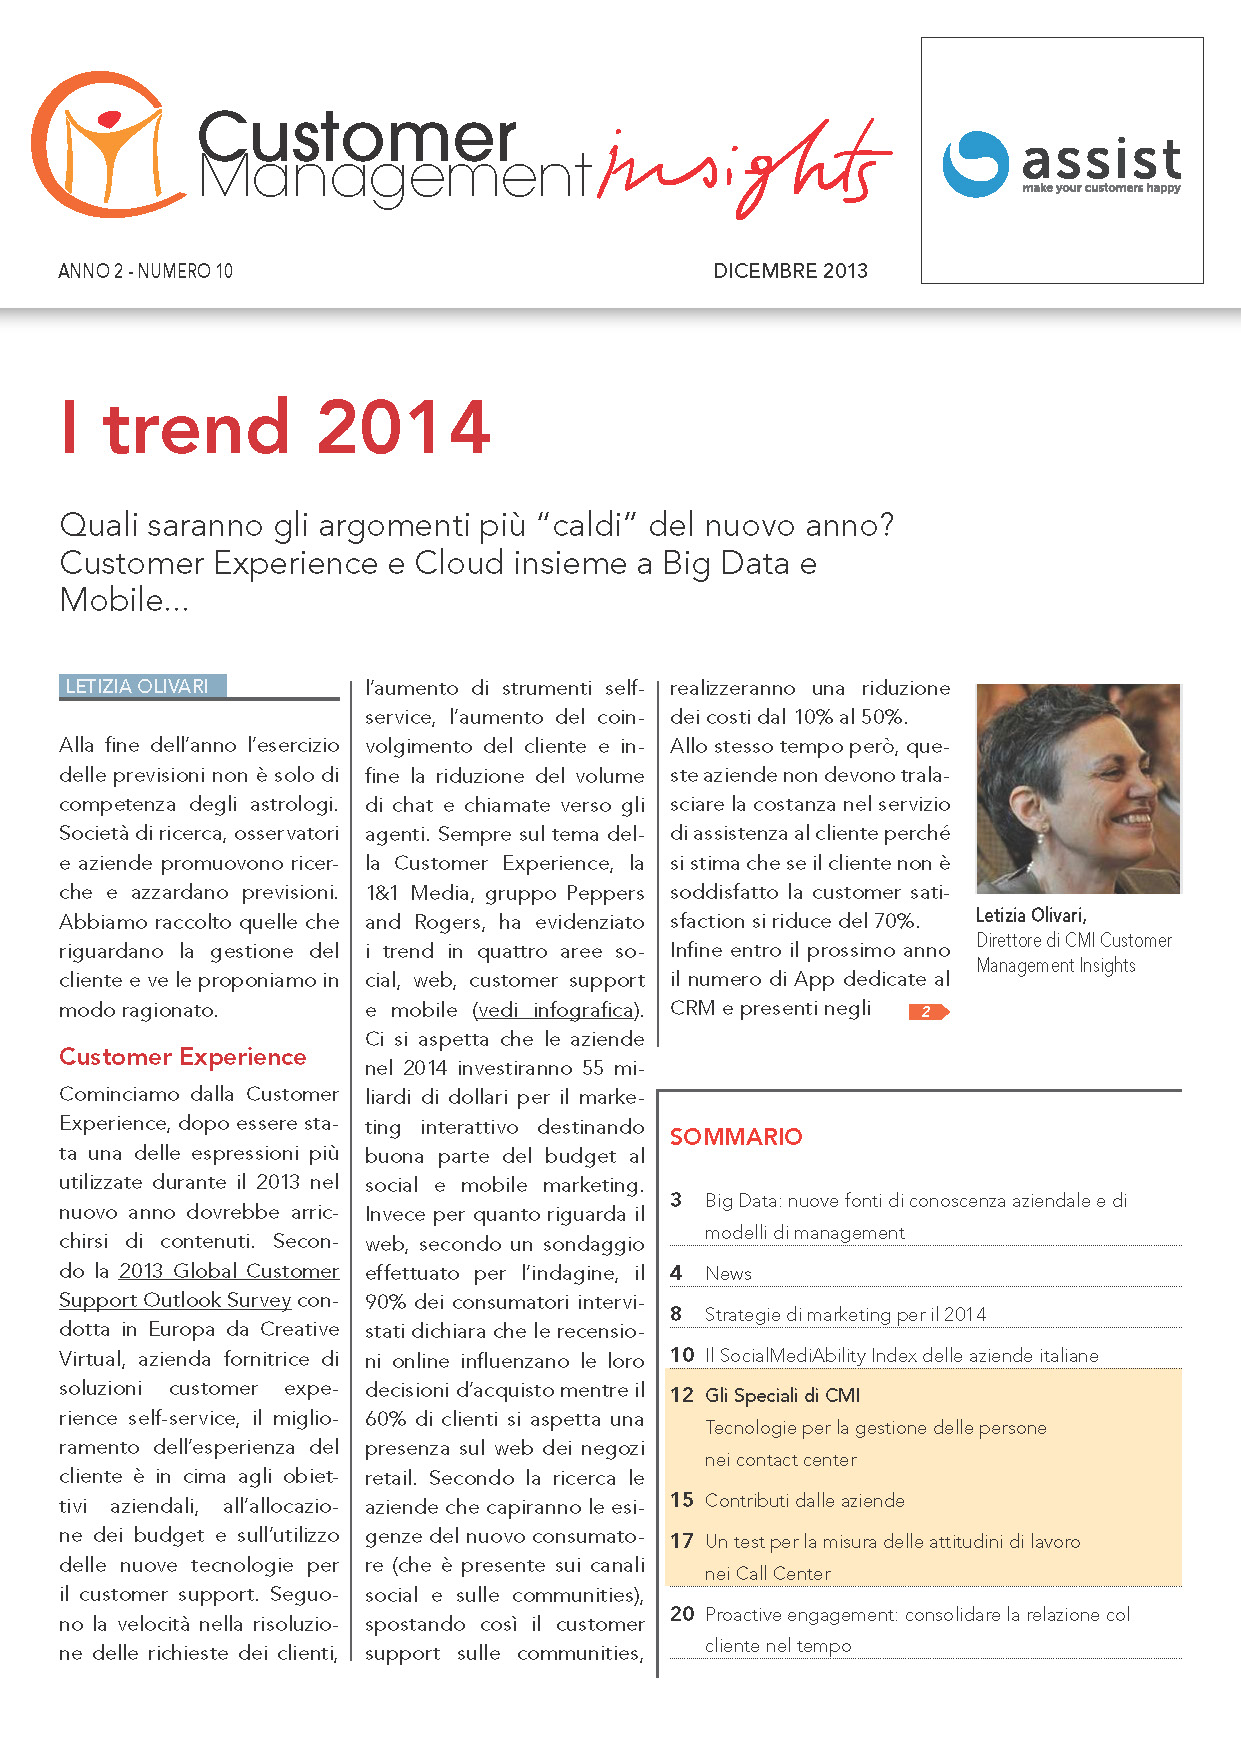 Dicembre 2013 – I trend 2014